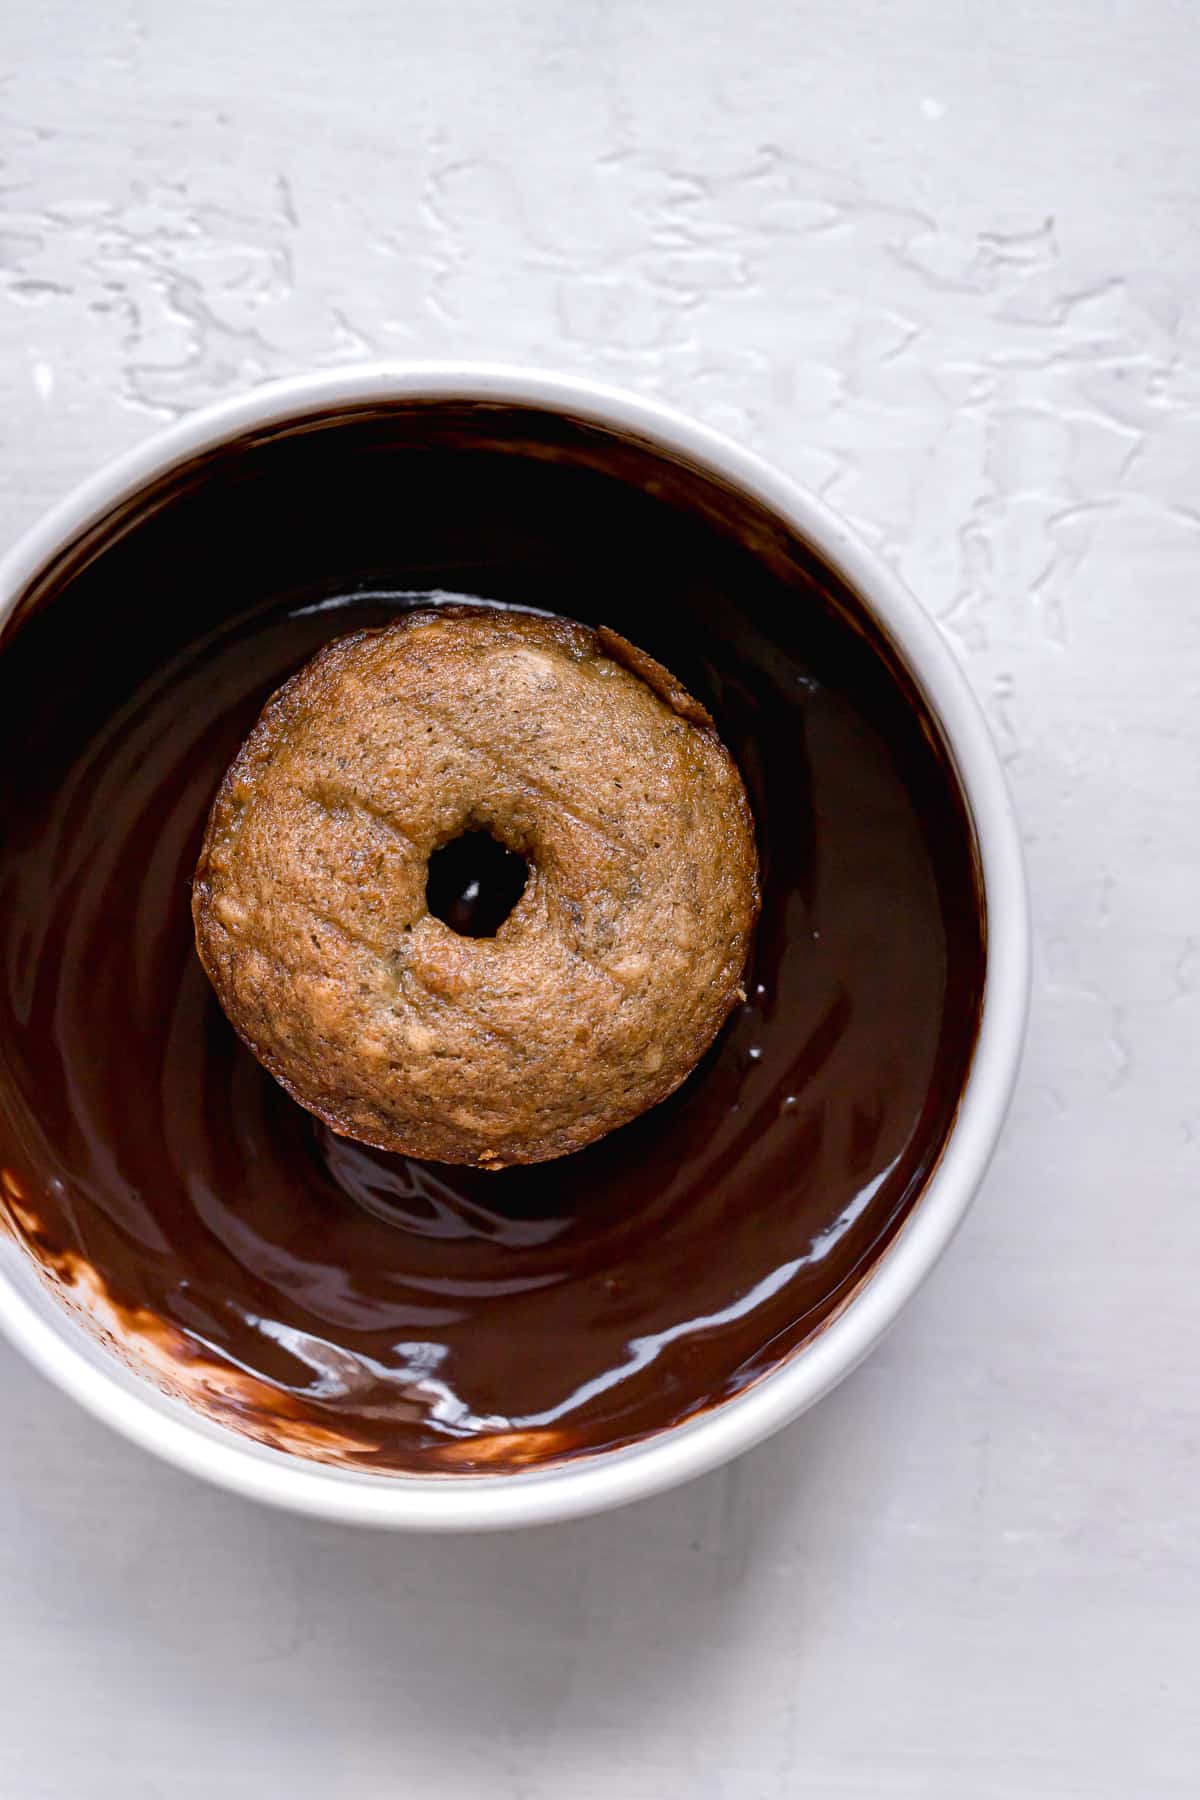 mini banana bread donut in bowl of chocolate glaze.